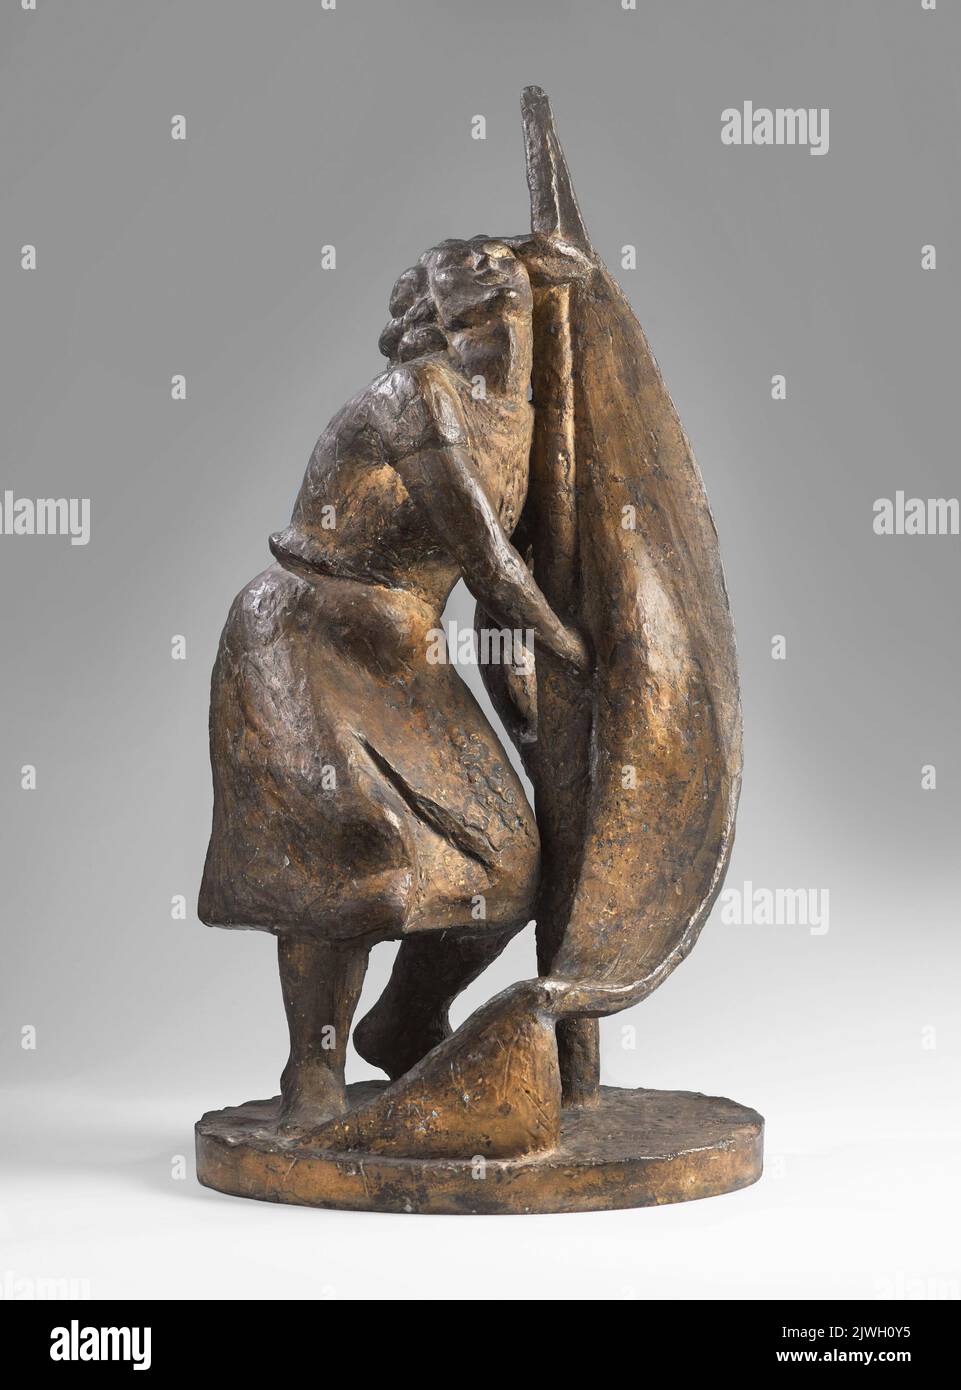 Dziewczyna ze sztandarem. Wiciński, Henryk (1908-1943), sculptor Stock Photo